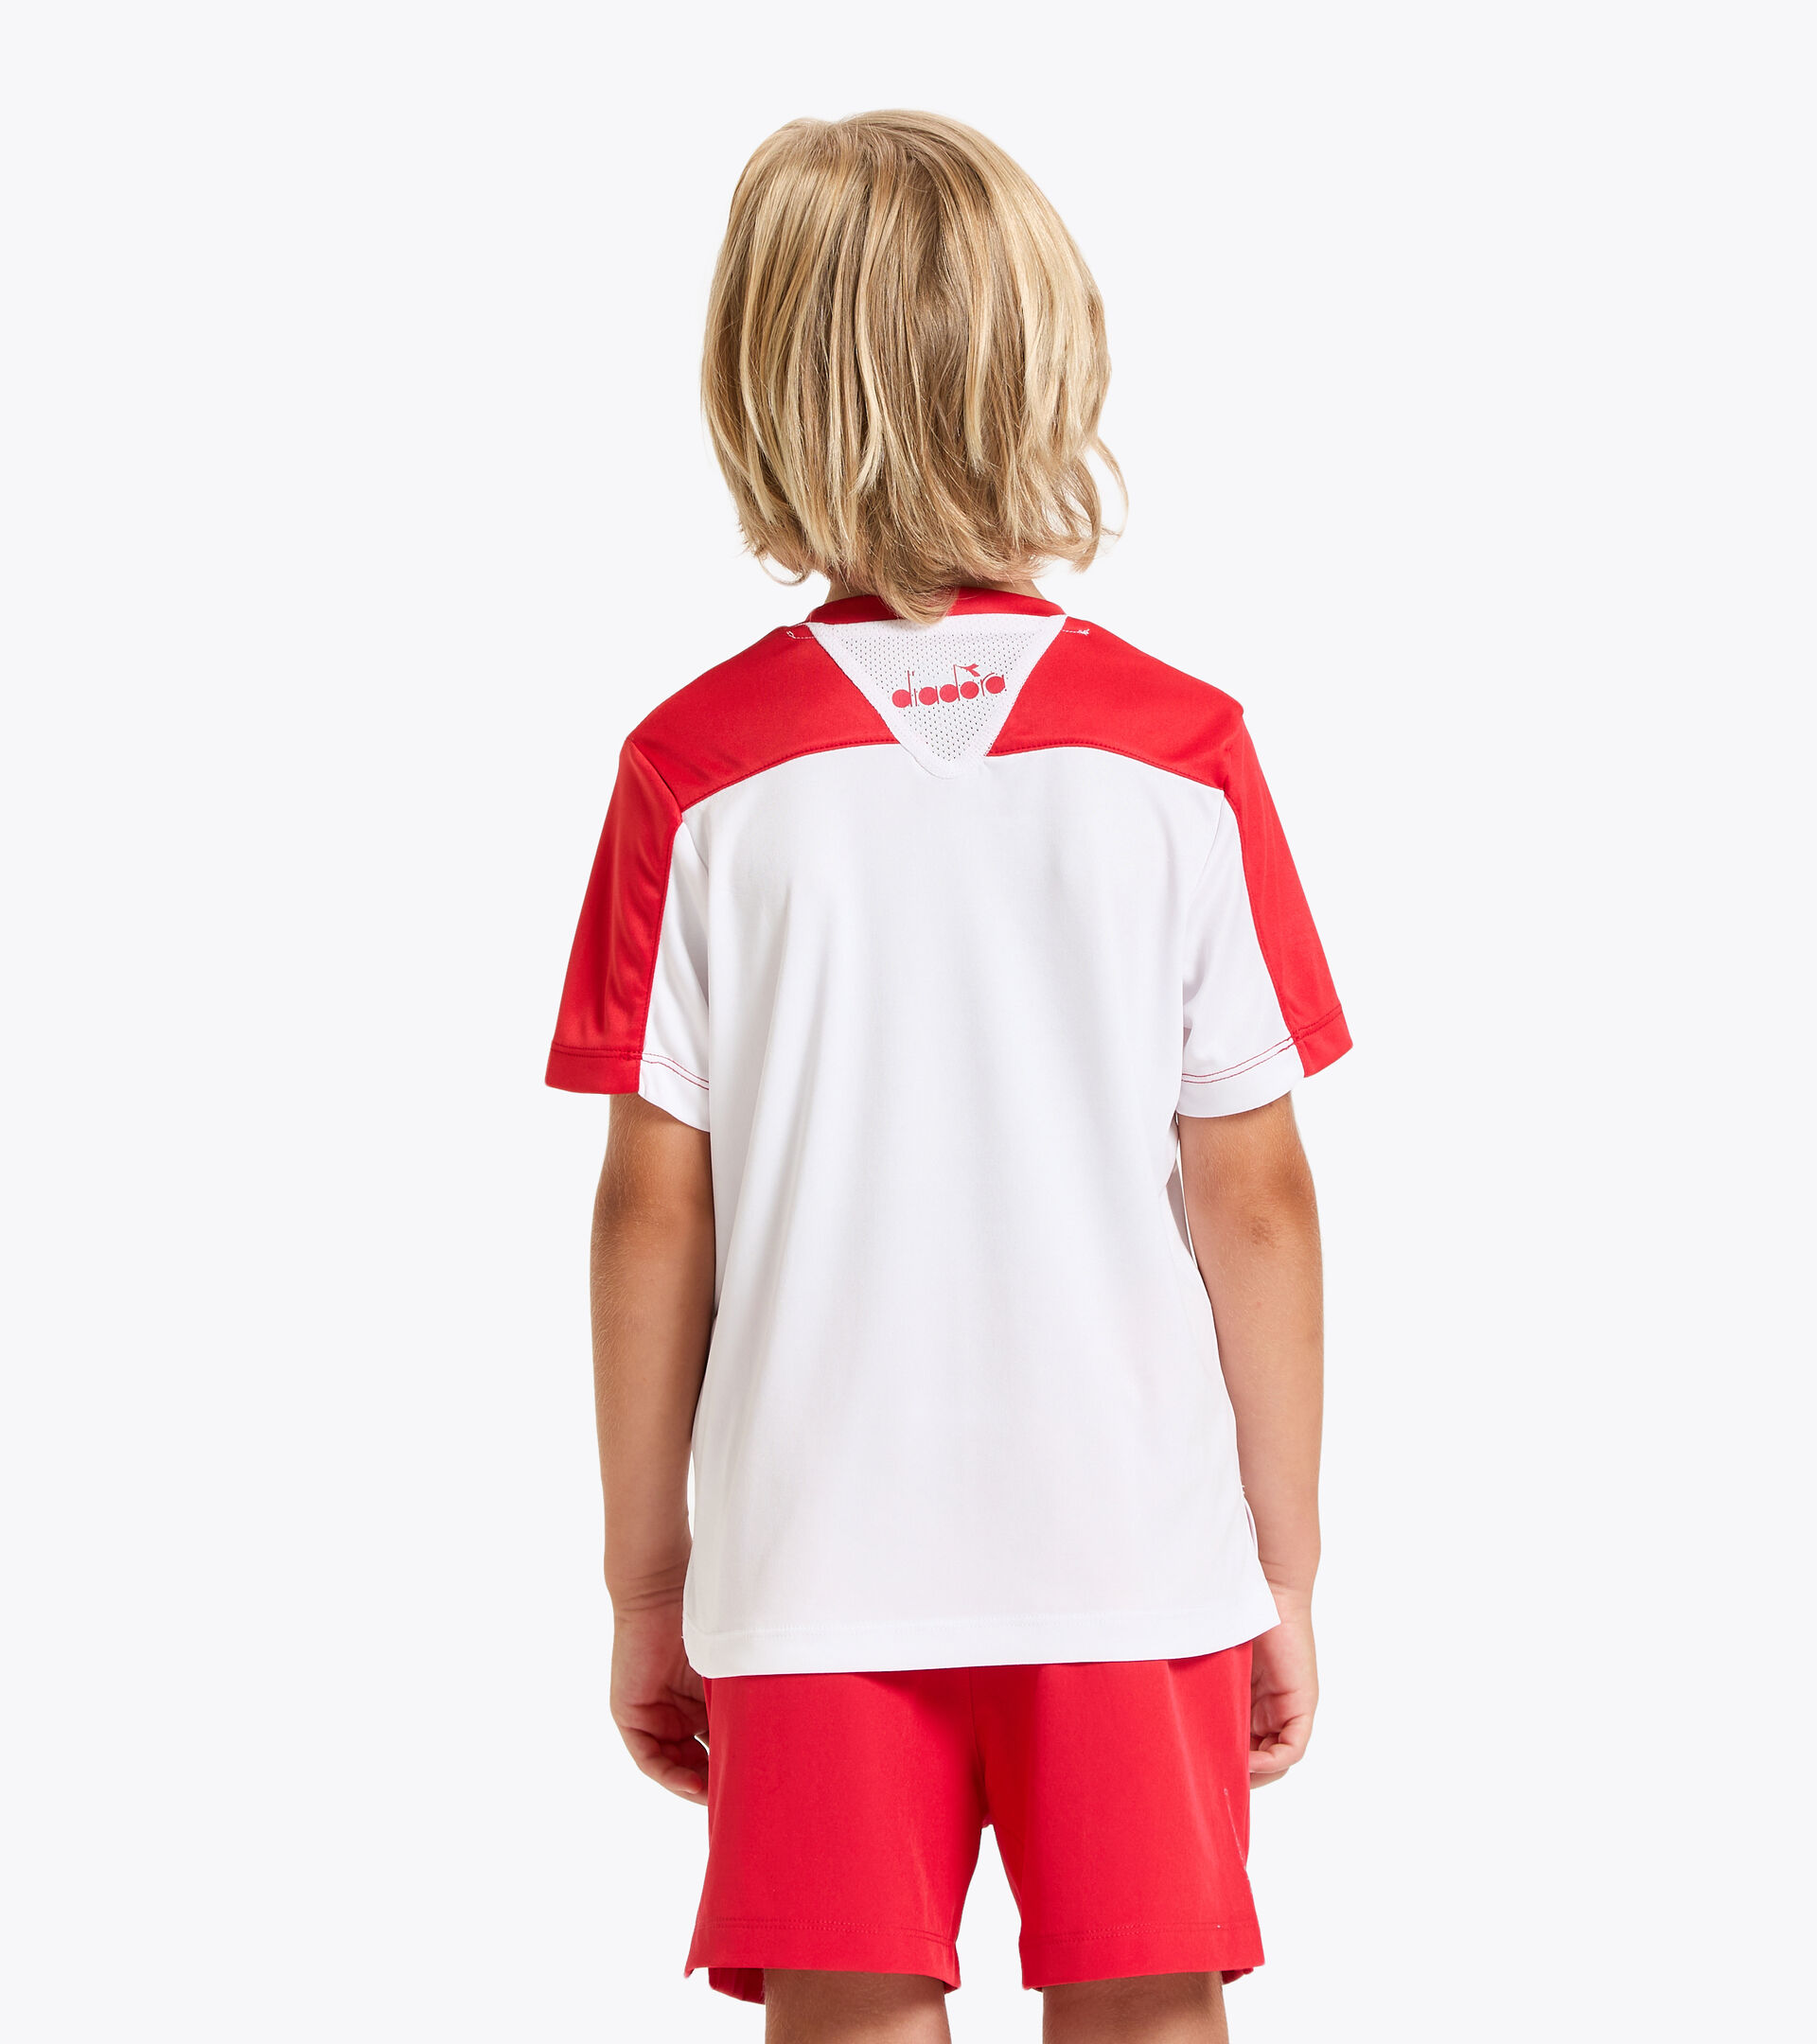 Camiseta de tenis - Junior J. T-SHIRT TEAM ROJO TOMATE - Diadora